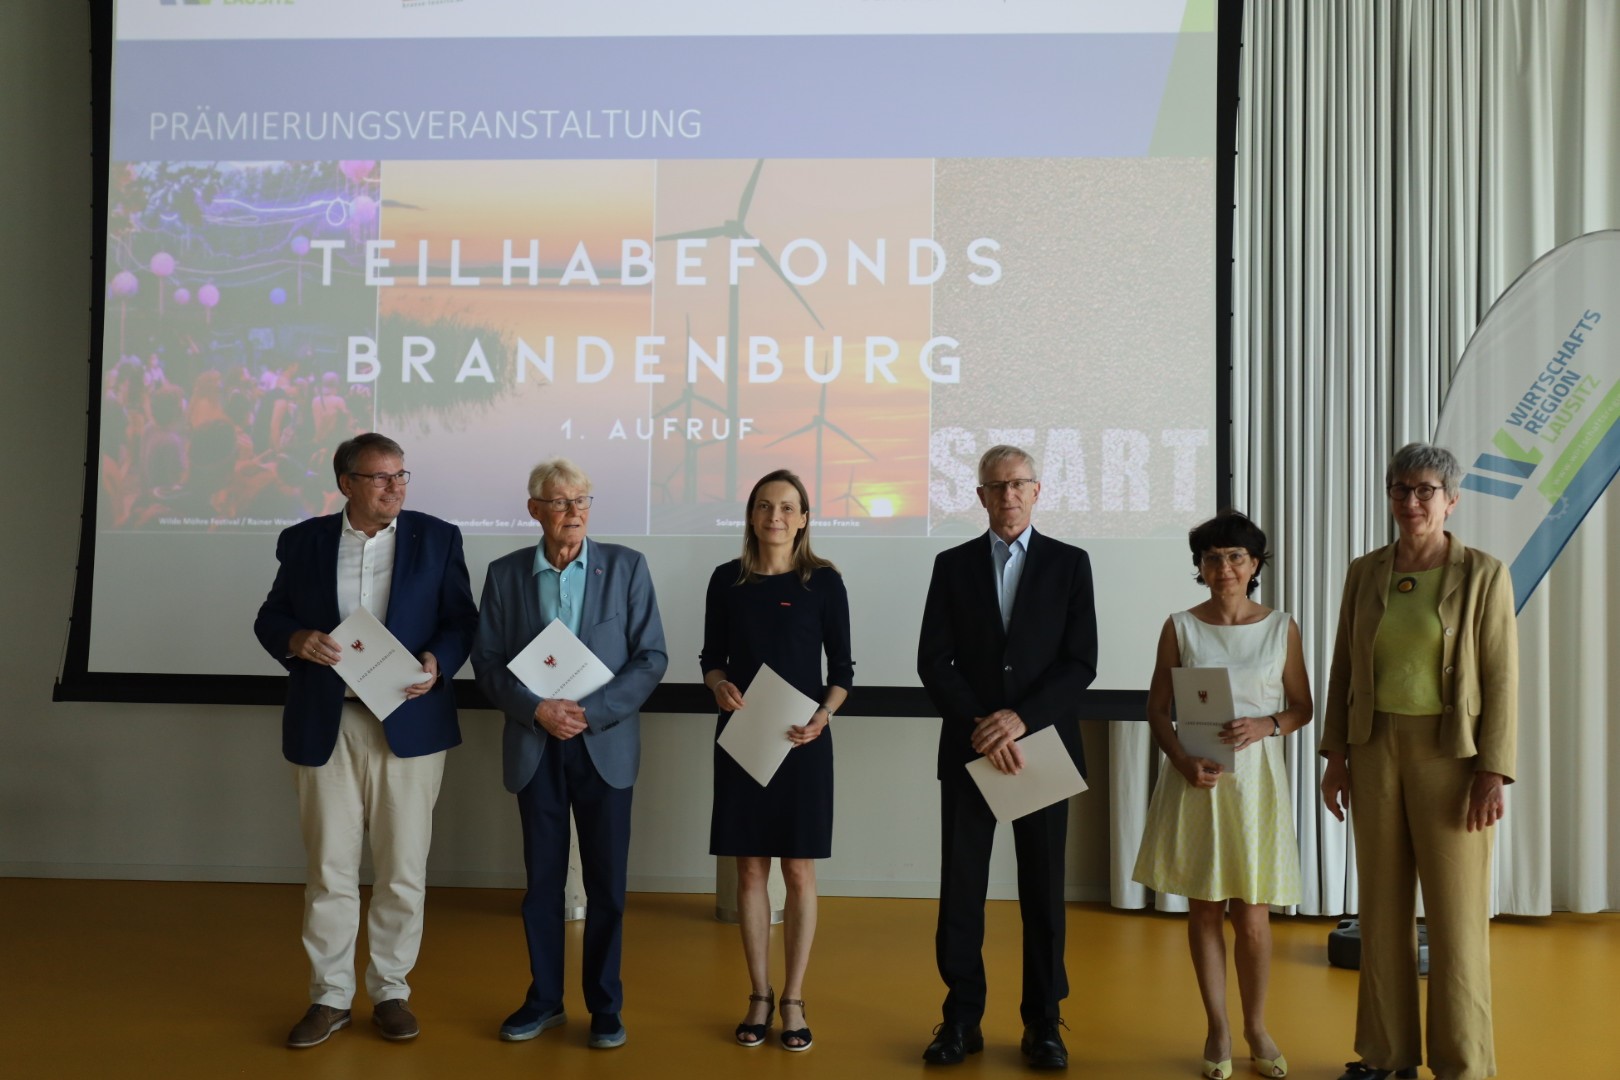 Prämierte des 1. Aufrufs Teilhabefonds Brandenburg mit Ministerin Schneider (rechts)